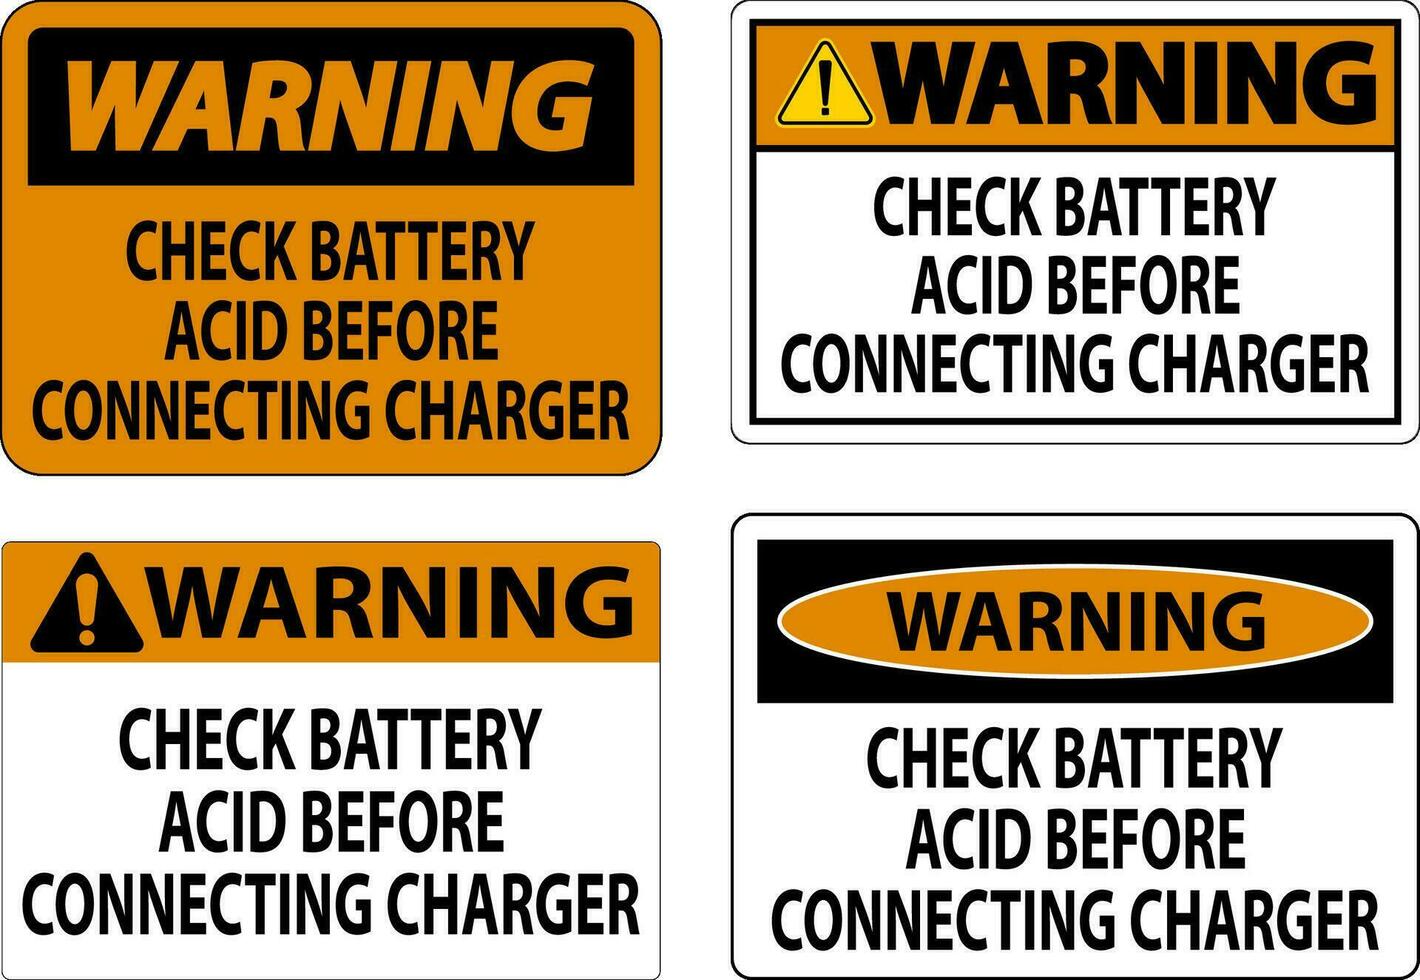 Atenção placa Verifica bateria ácido antes conectando carregador vetor